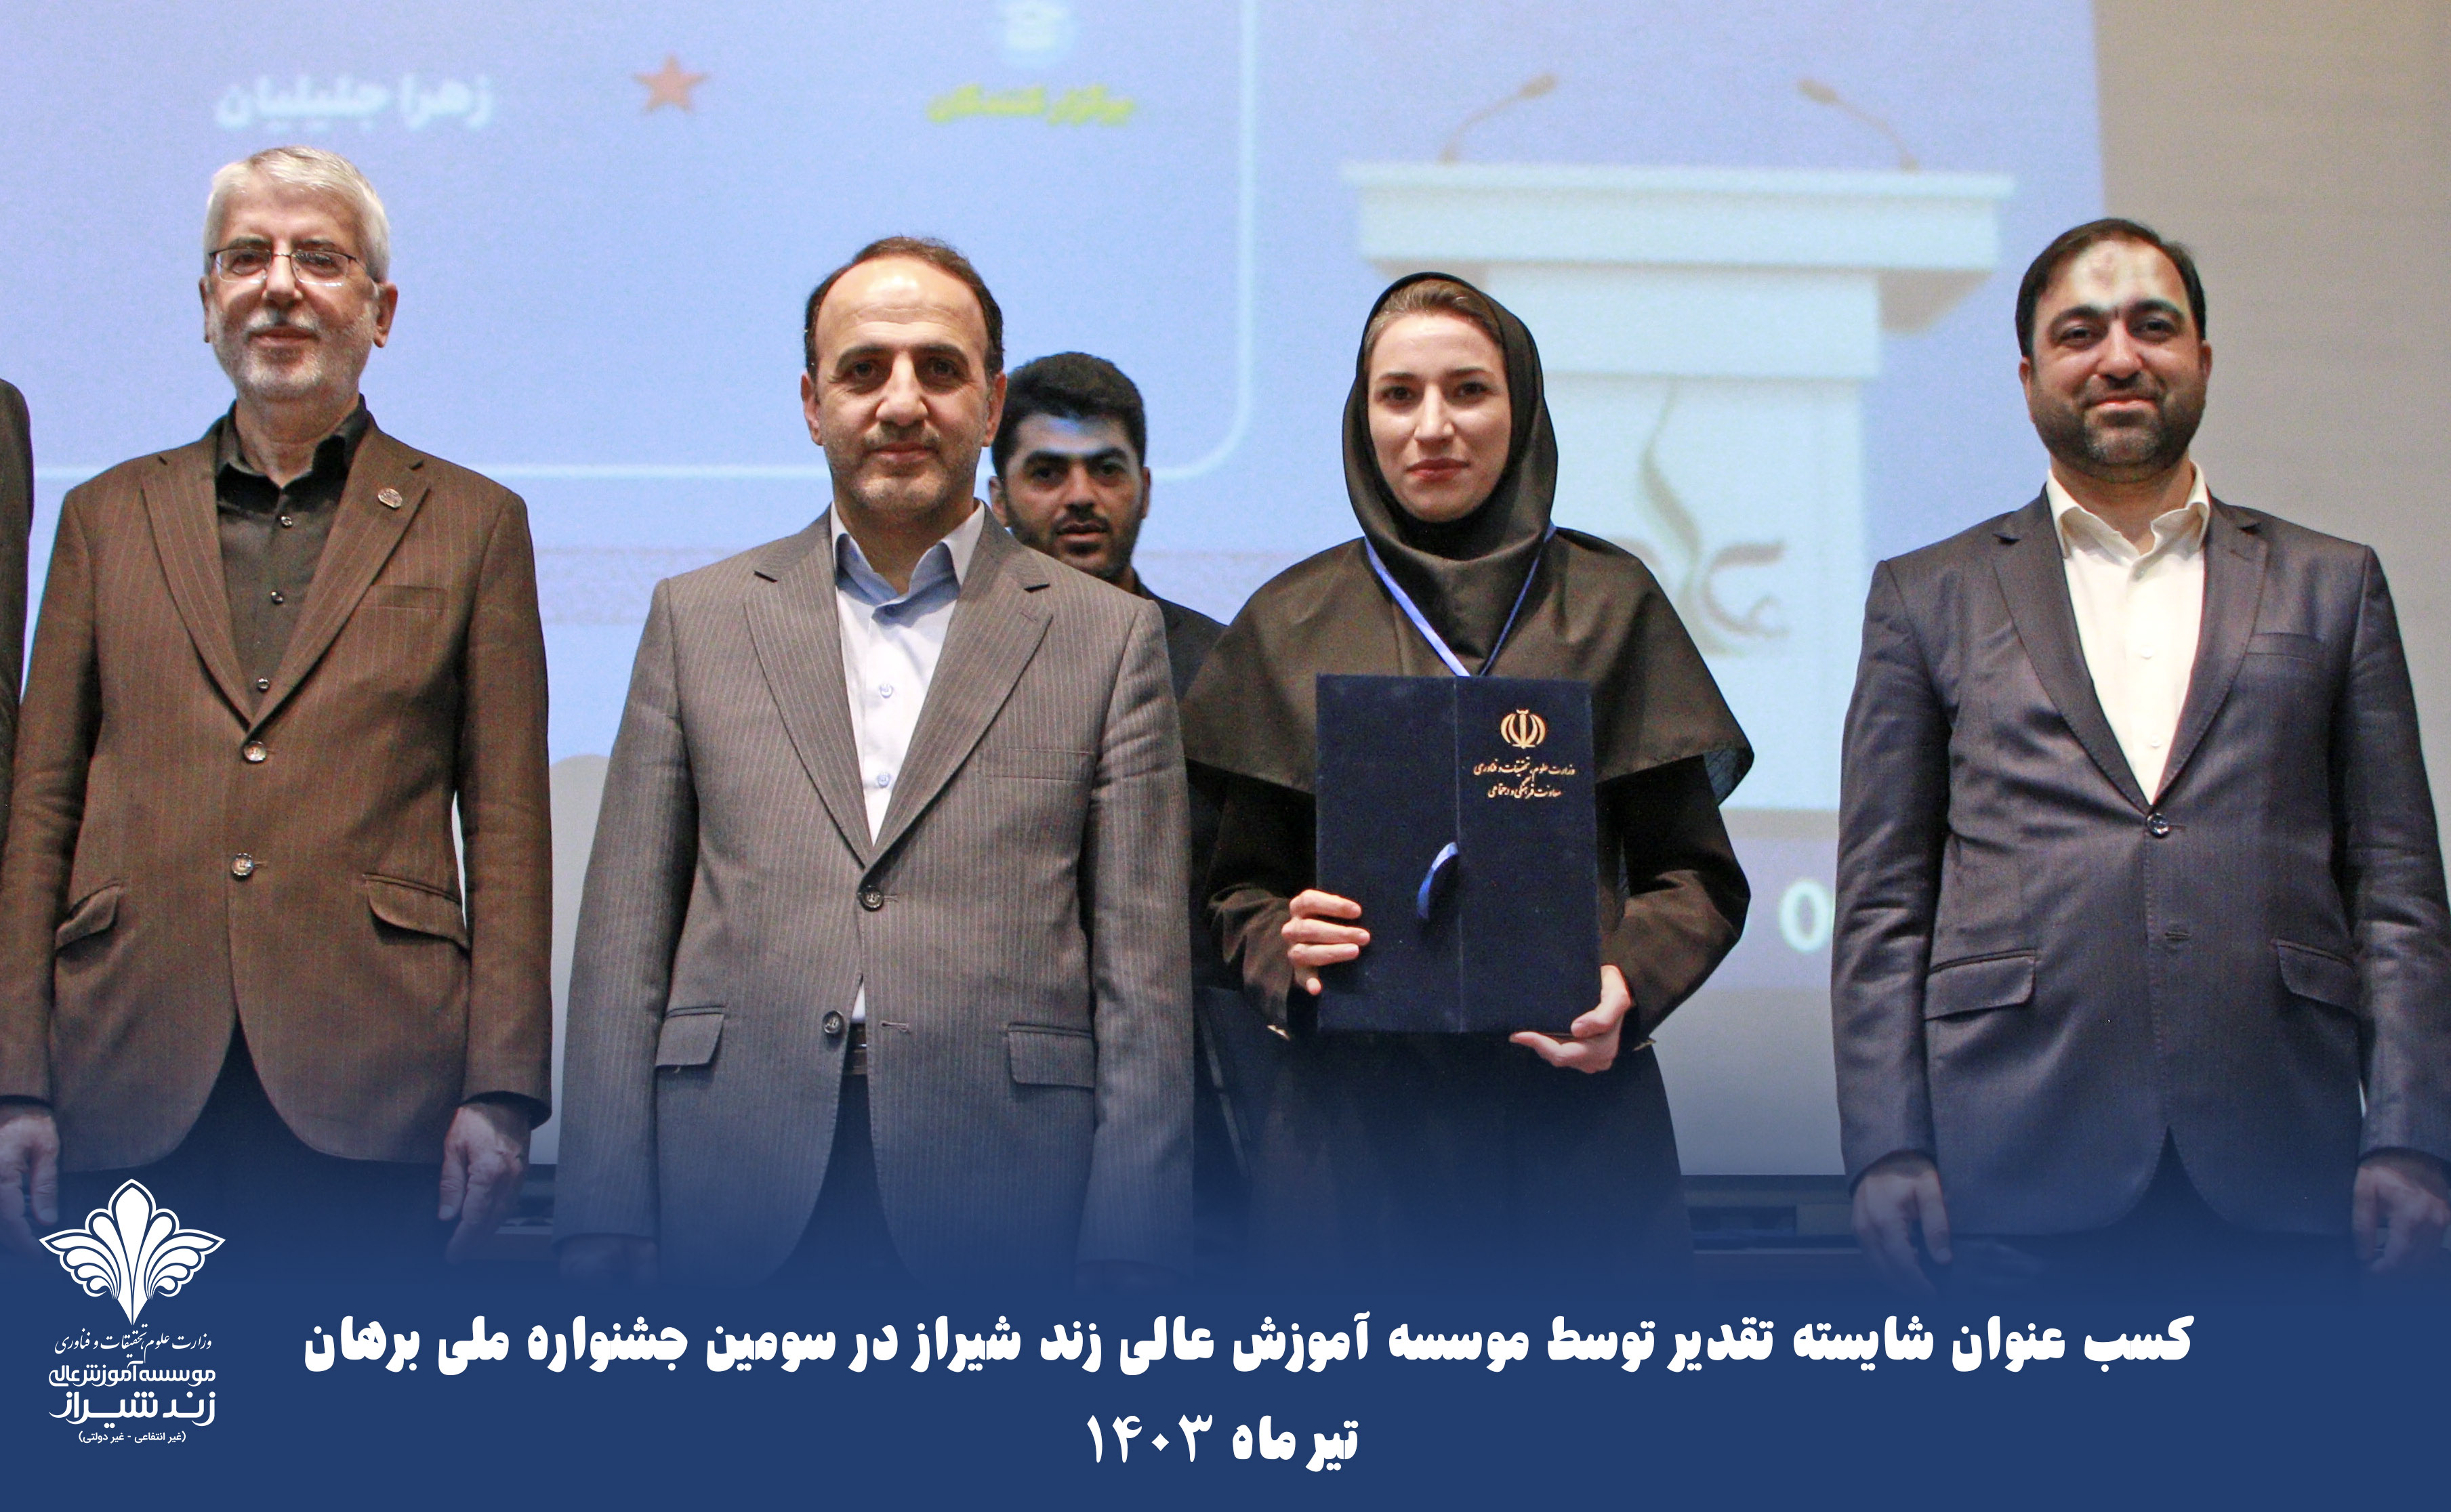 کسب عنوان شایسته تقدیر توسط موسسه آموزش عالی زند شیراز در سومین جشنواره ملی برهان